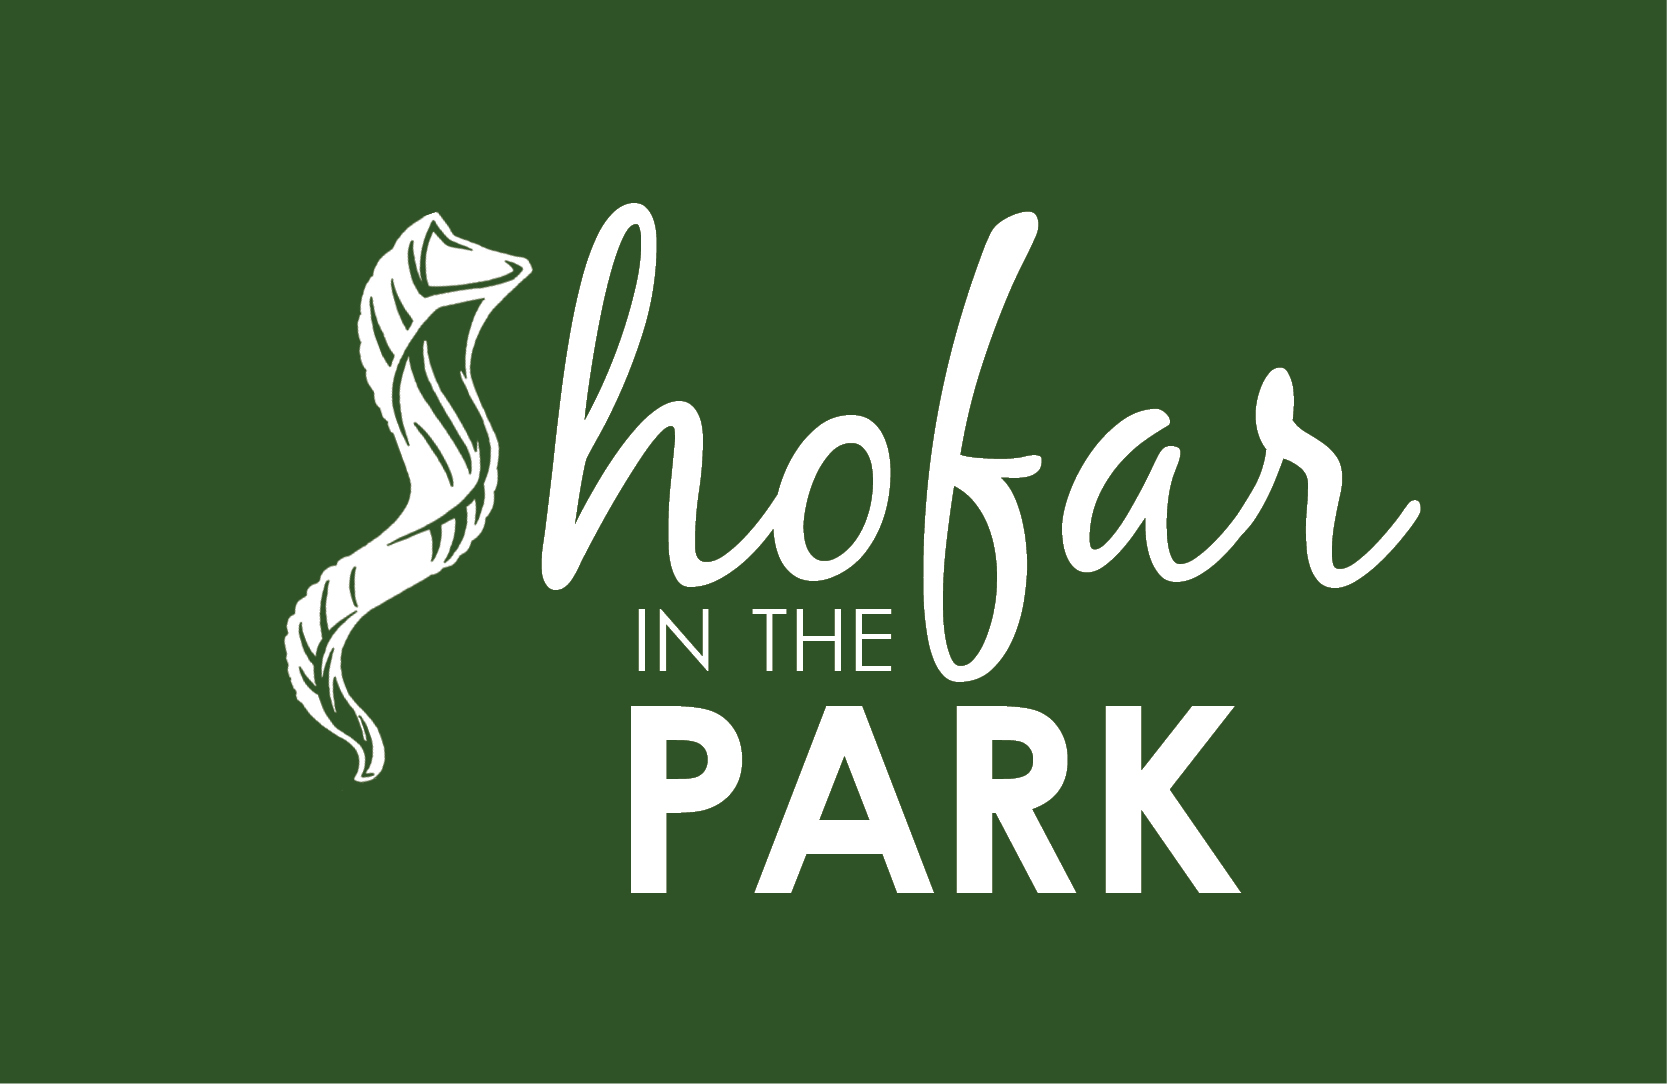 Shofar in the Park - Rosh Hashanah, Day 2